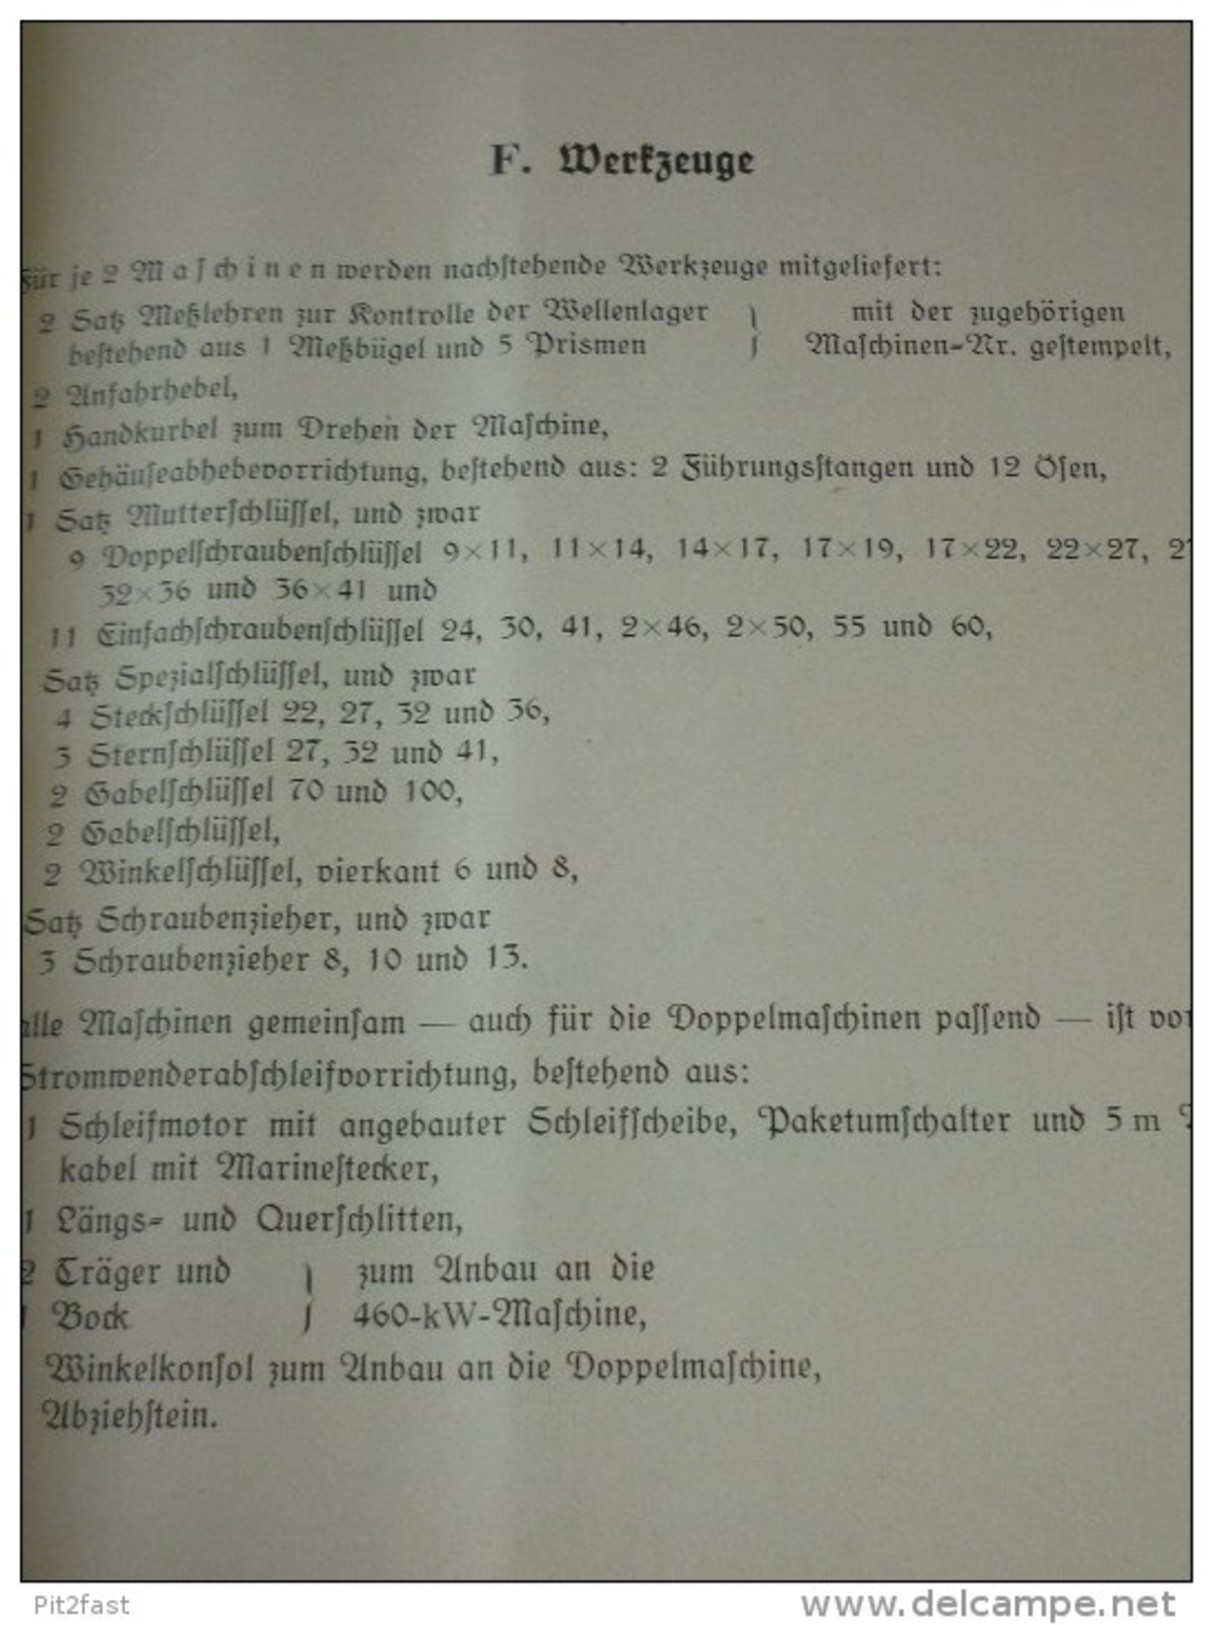 Großes Handbuch für Schlachtschiff Gneisenau , Kiel 1938 , 460 KW-Gs- Turbo - E-Maschinen , sehr viele Klappkarten,  AEG